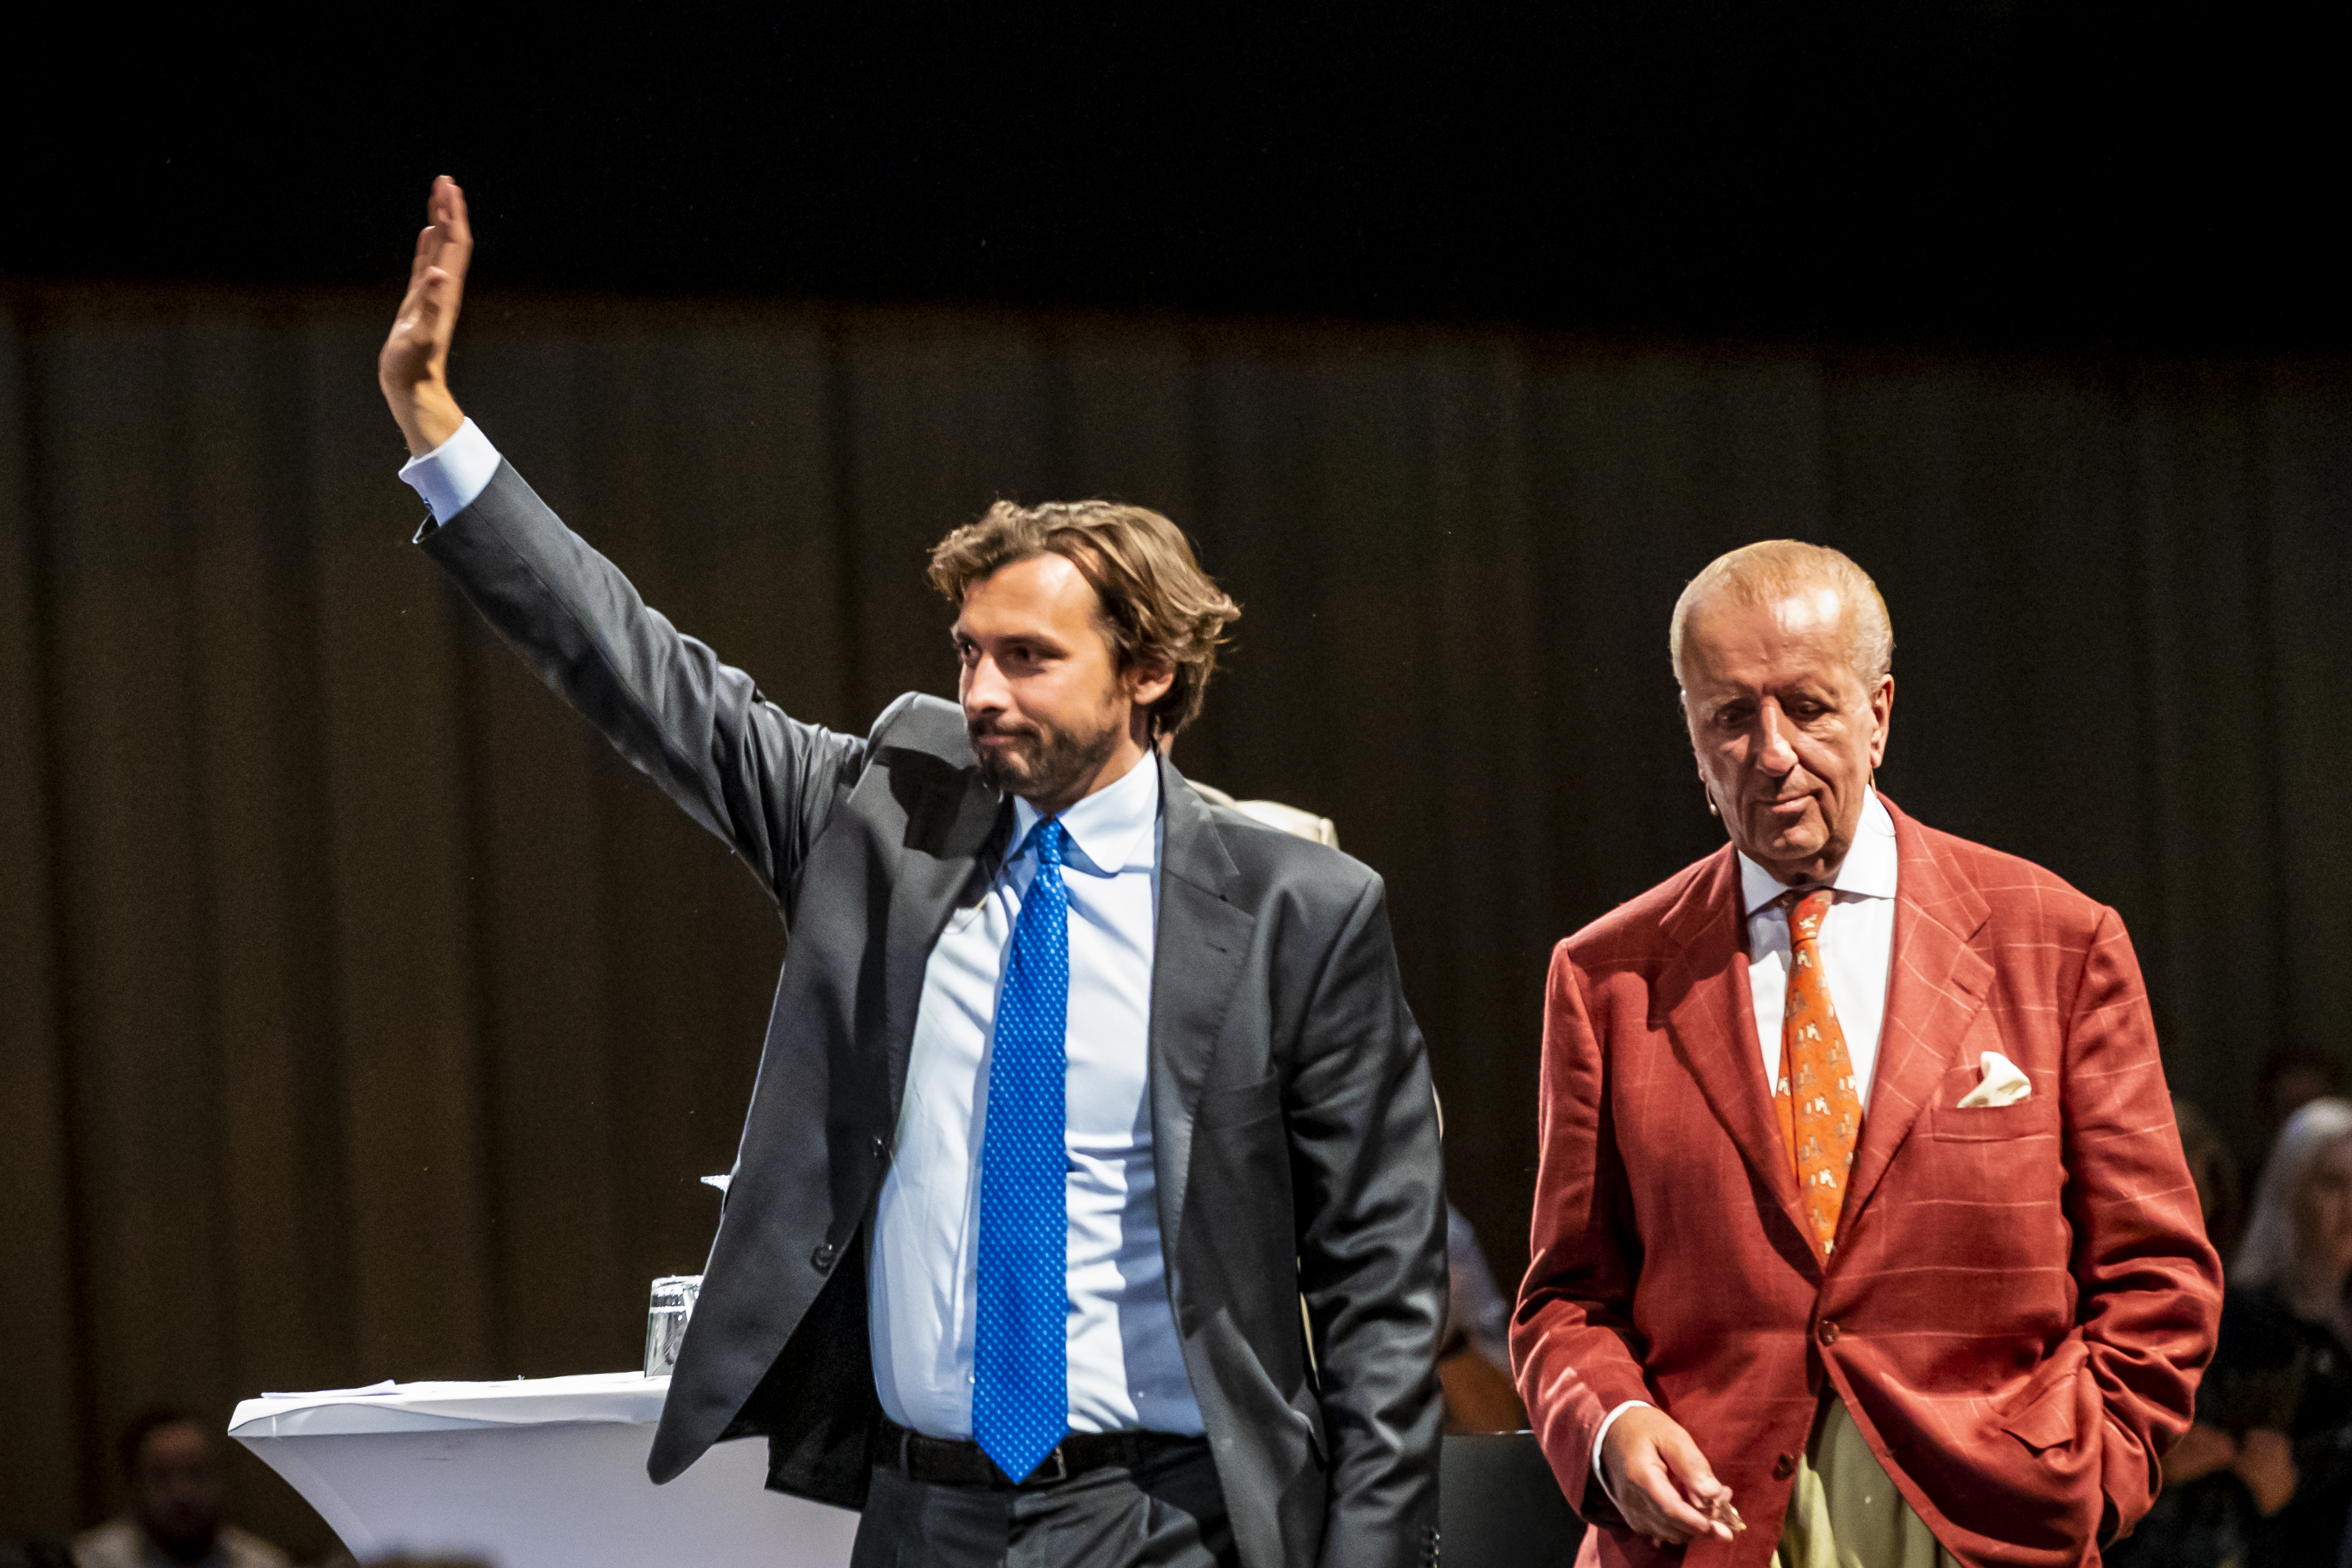 hierry Baudet en Theo Hiddema komen terug op het podium nadat een bijeenkomst van Forum voor Democratie enige tijd was stilgelegd.